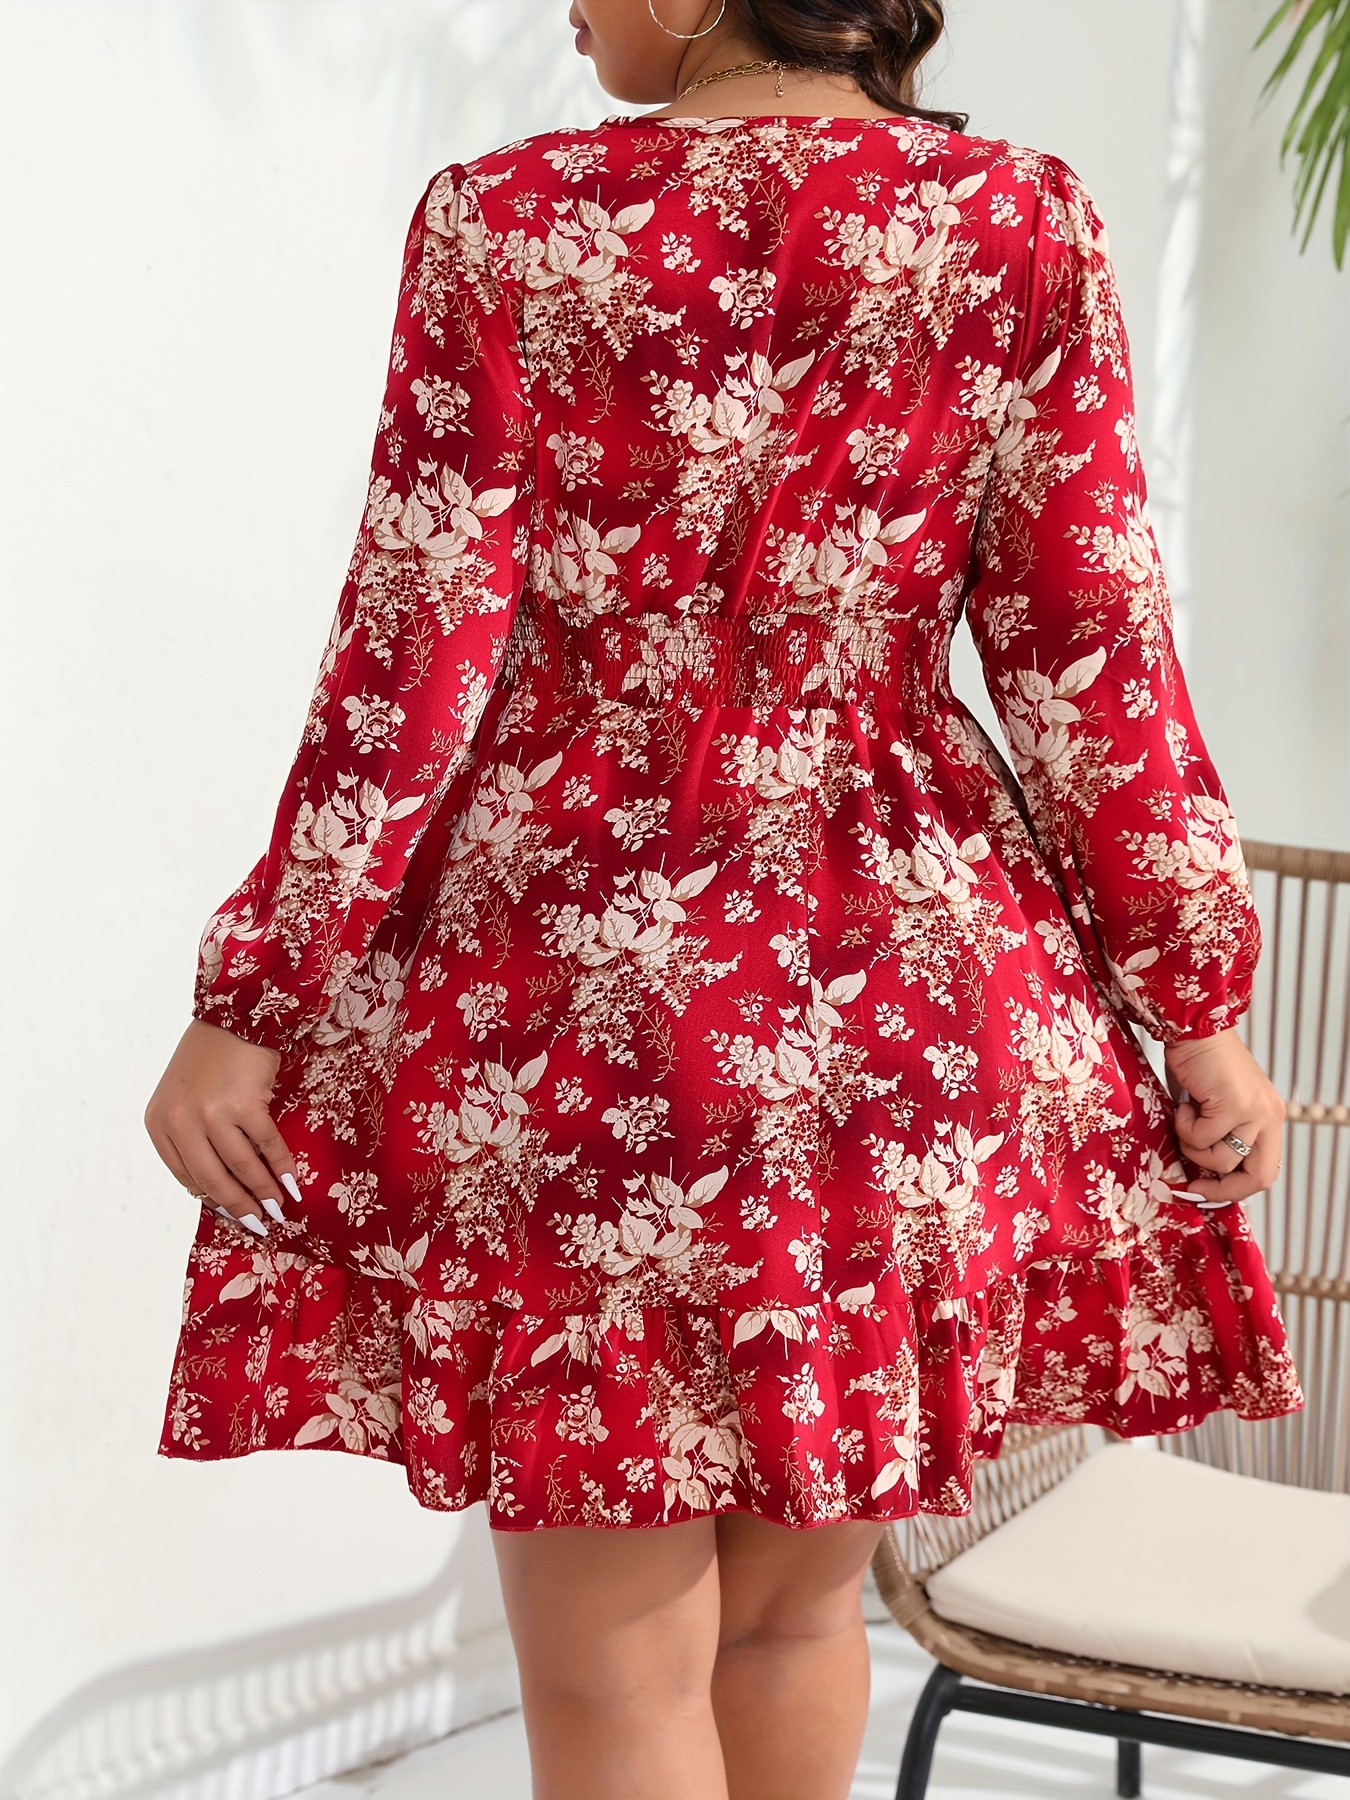 Auroural Dresses That Hide Tummy Bulge Women Plus Size V Neck Floral Print  Short Sleeve Boho Dress Party Dress